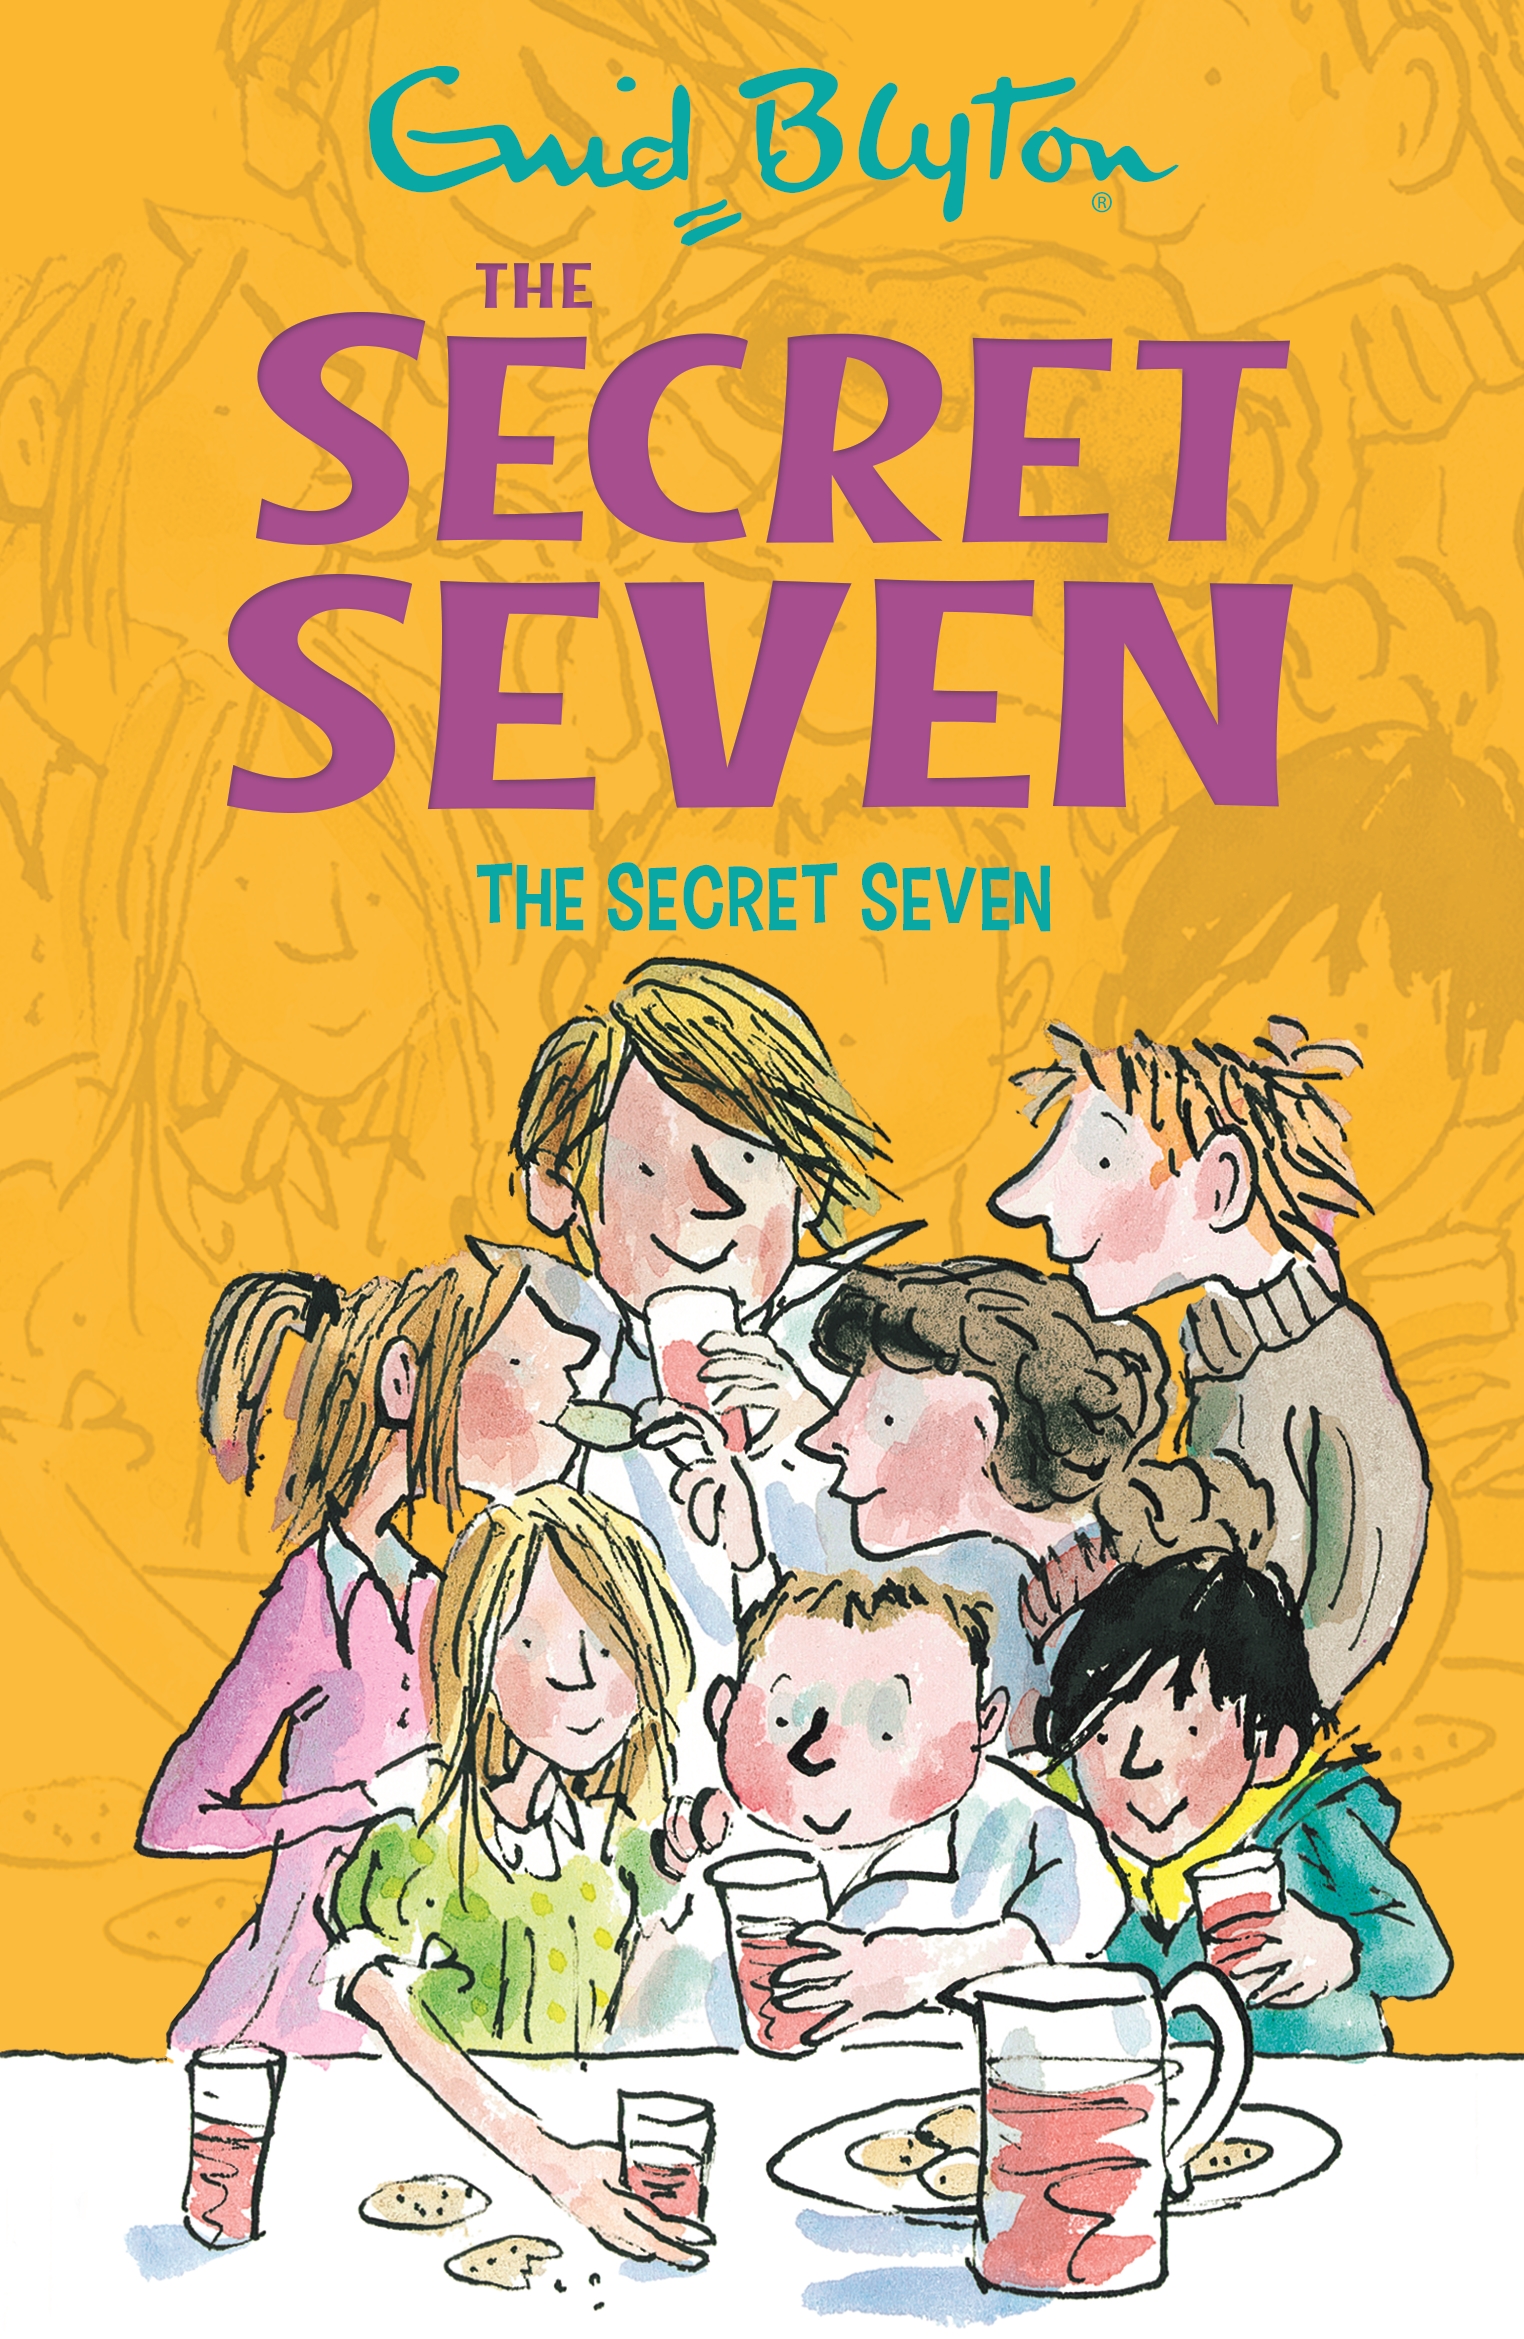 Secret Seven: The Secret Seven by Enid Blyton | Hachette ...